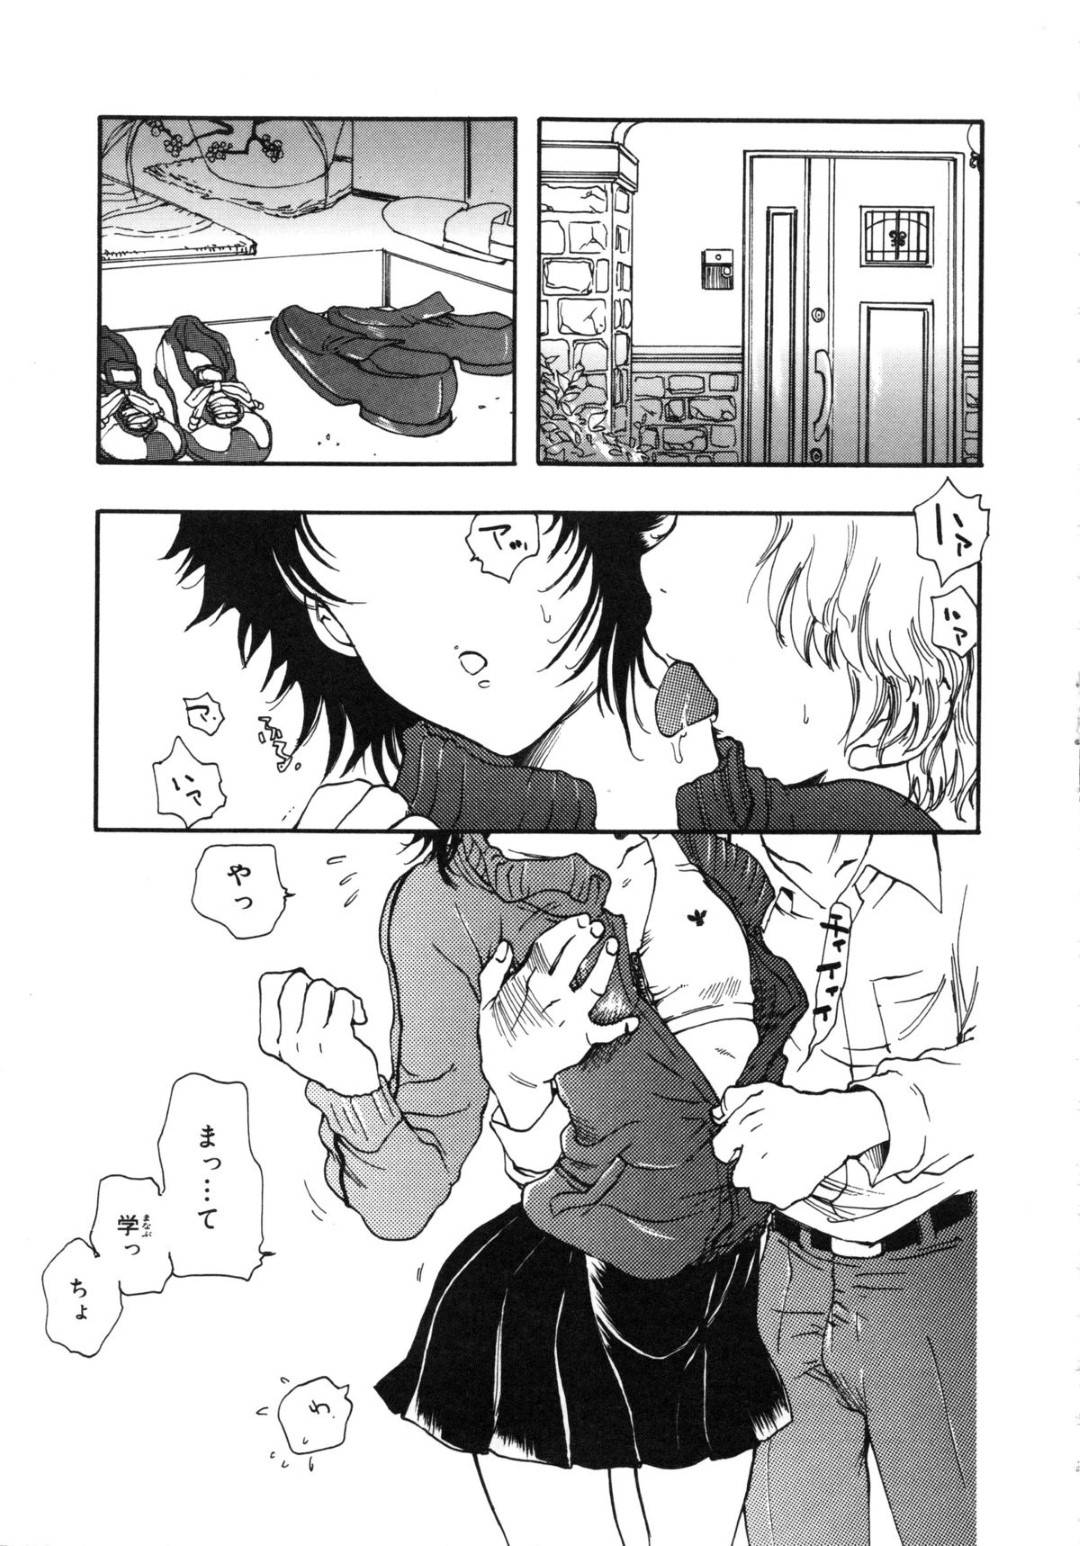 【エロ漫画】触り合いっこをしていた幼馴染とついにセックスをしようとしている少女…手マンされついに正常位でセックスする2人をクローゼット内に隠れたおばさんに見られていた！【吉田ふらわ】